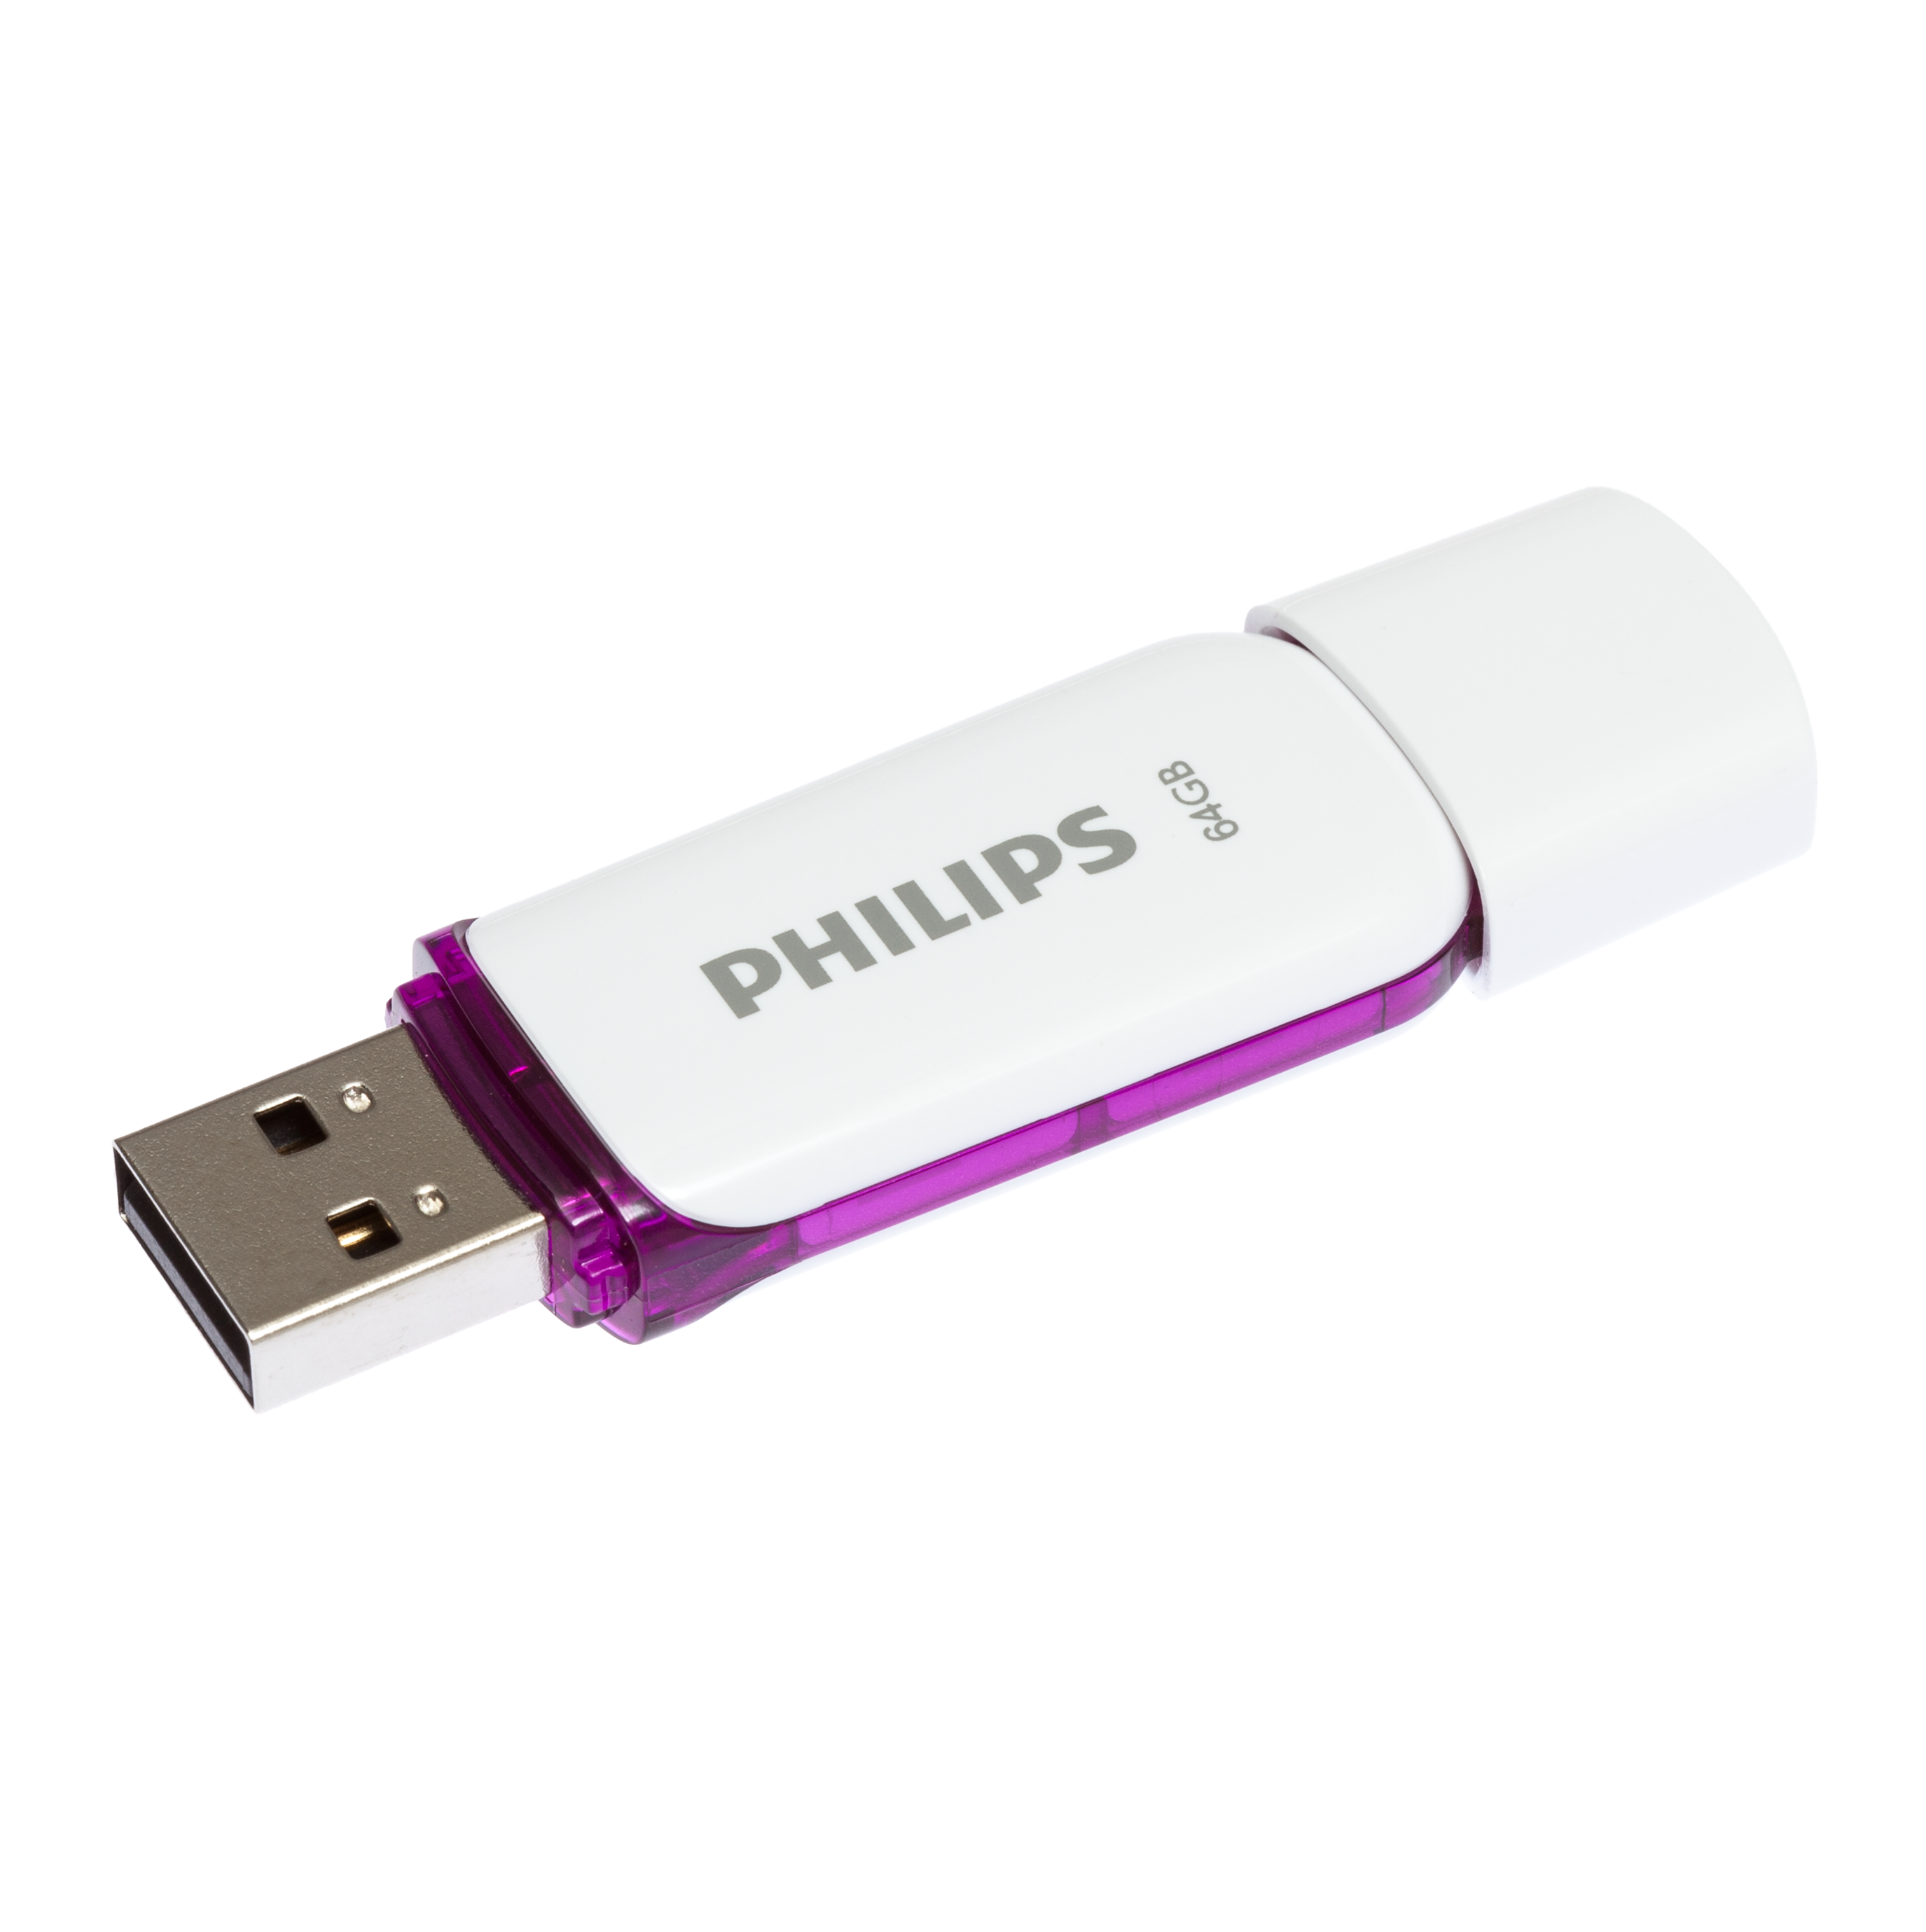 PHILIPS Snow Edition 64GB Purple®, Magic 25 MB/s, USB-Stick GB) 64 weiss (Weiß